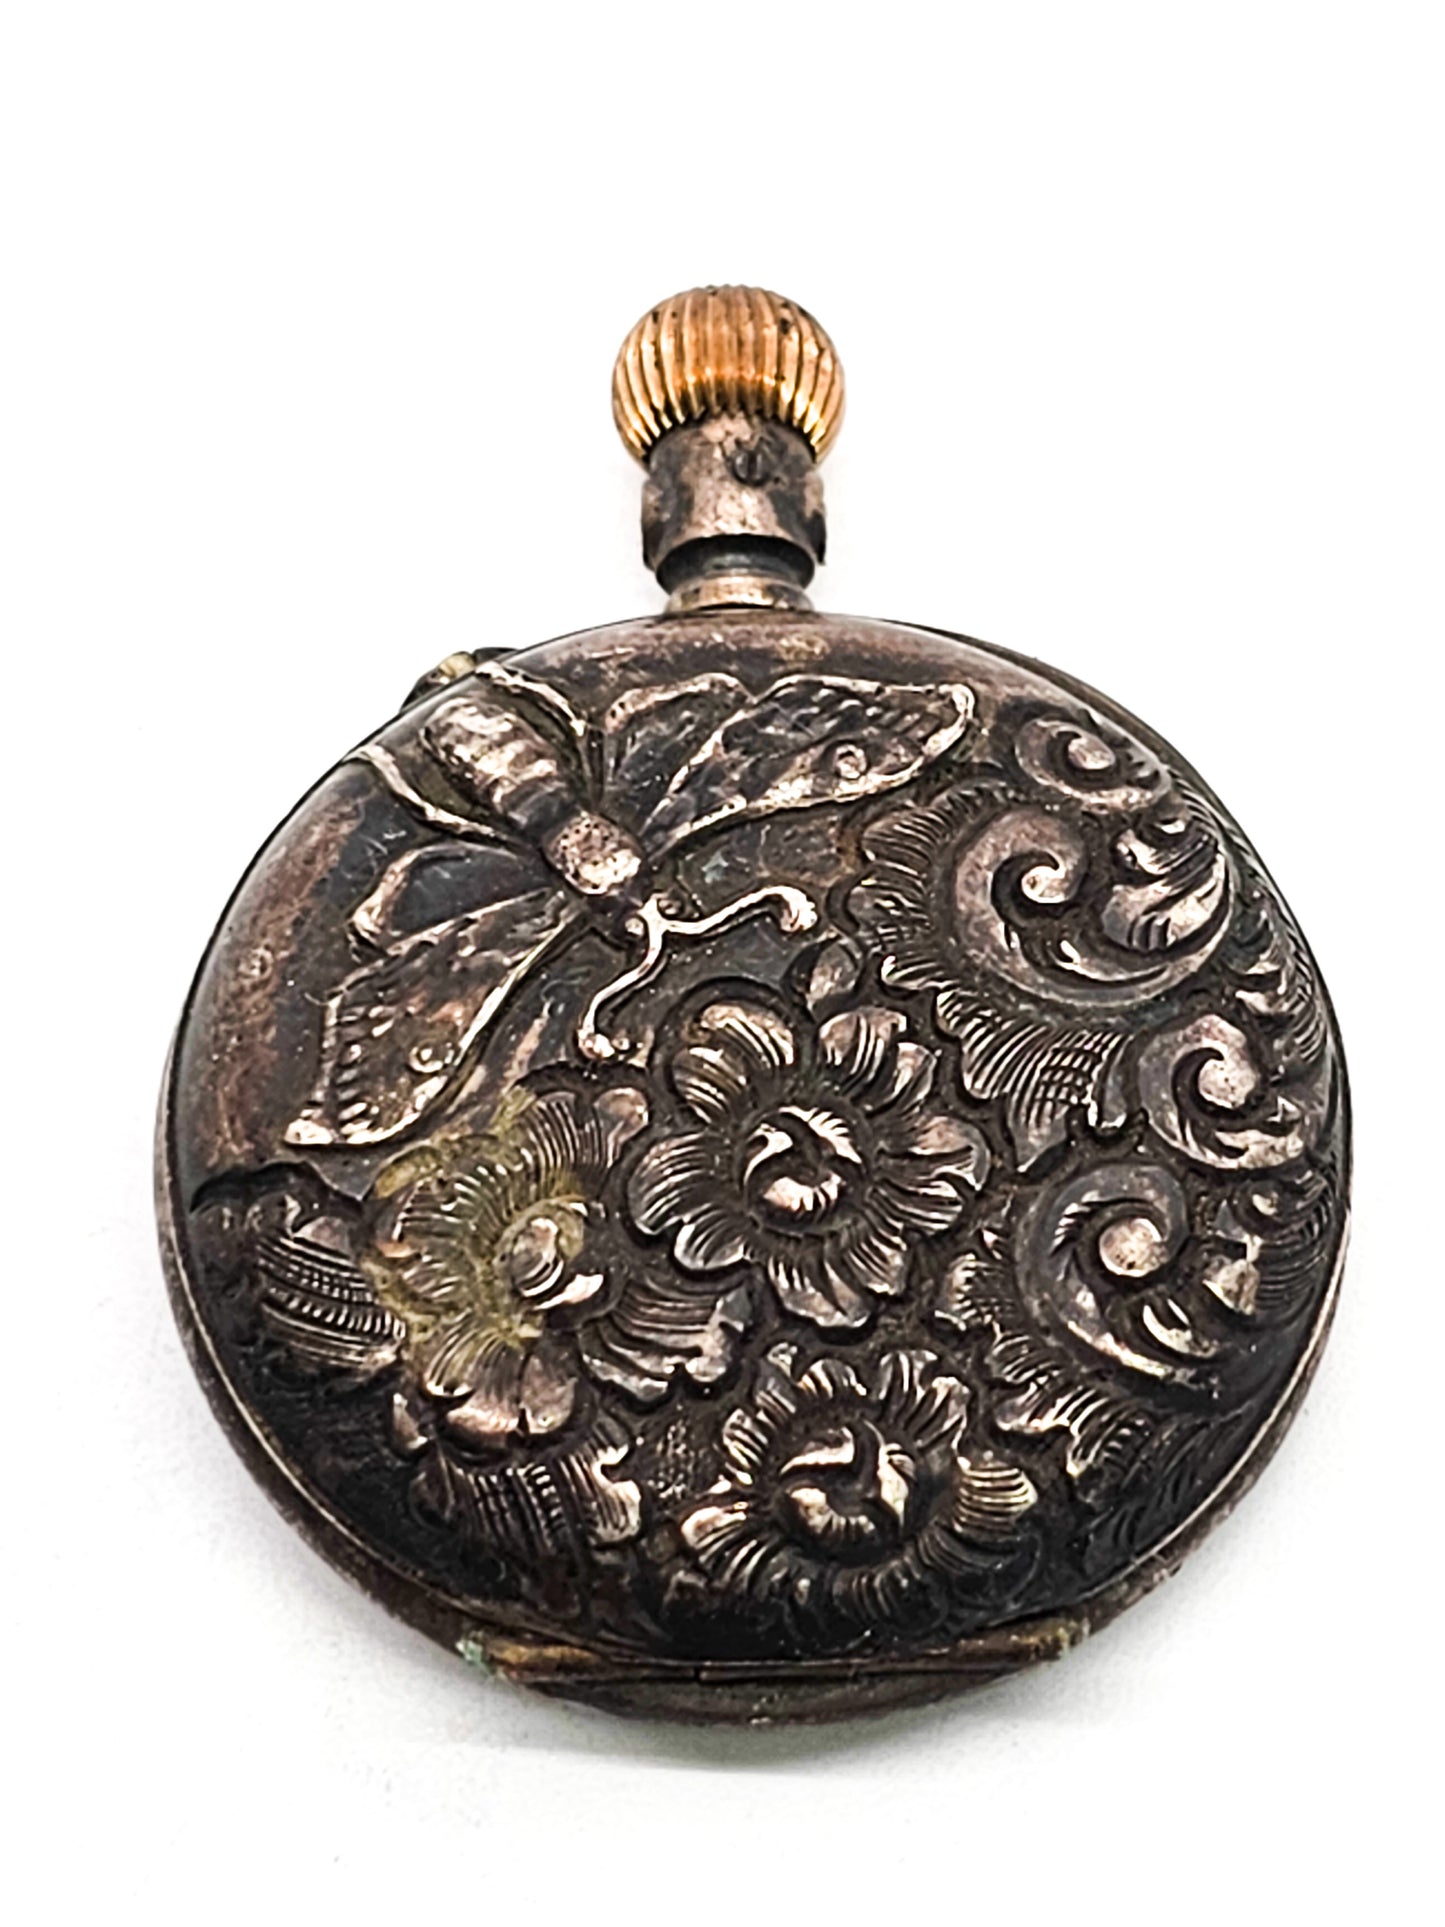 Bijou Bee and flower garden motif antique 900 silver pocket watch non working